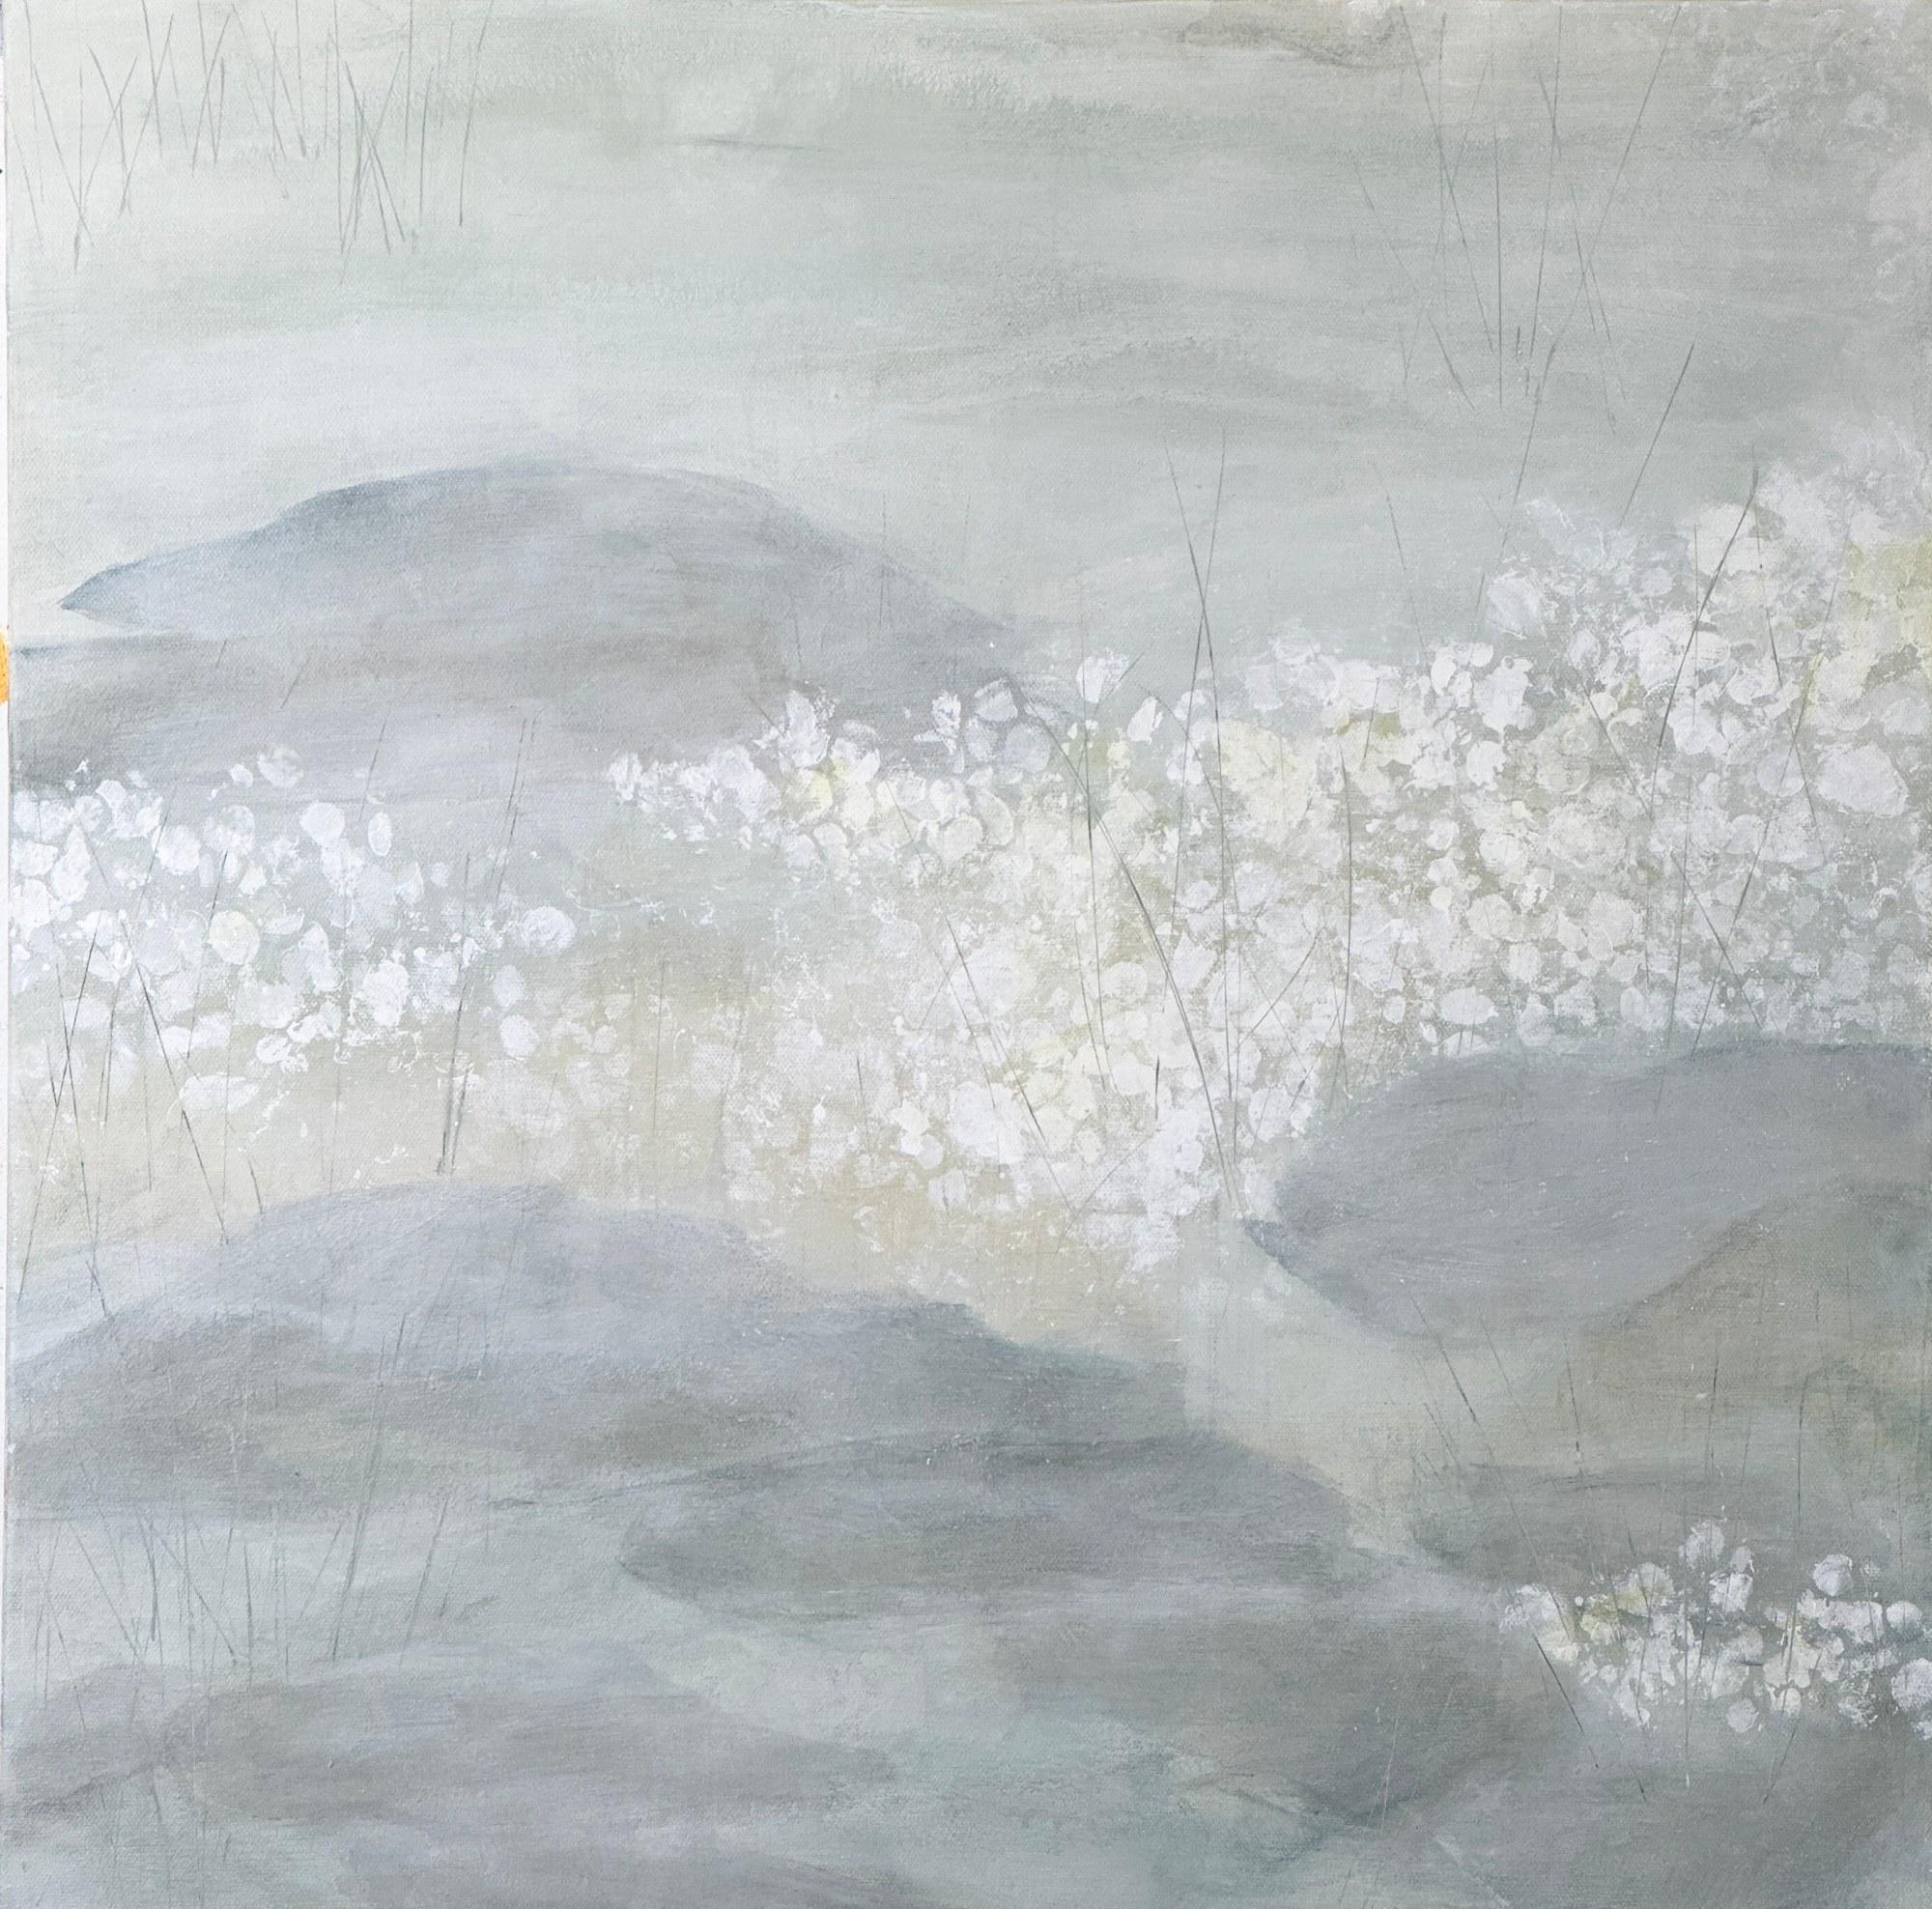 Juanita Bellavance  Abstract Painting – Der Teich am 3. Februar, Fliederteich, neutrale, weiche Kunst